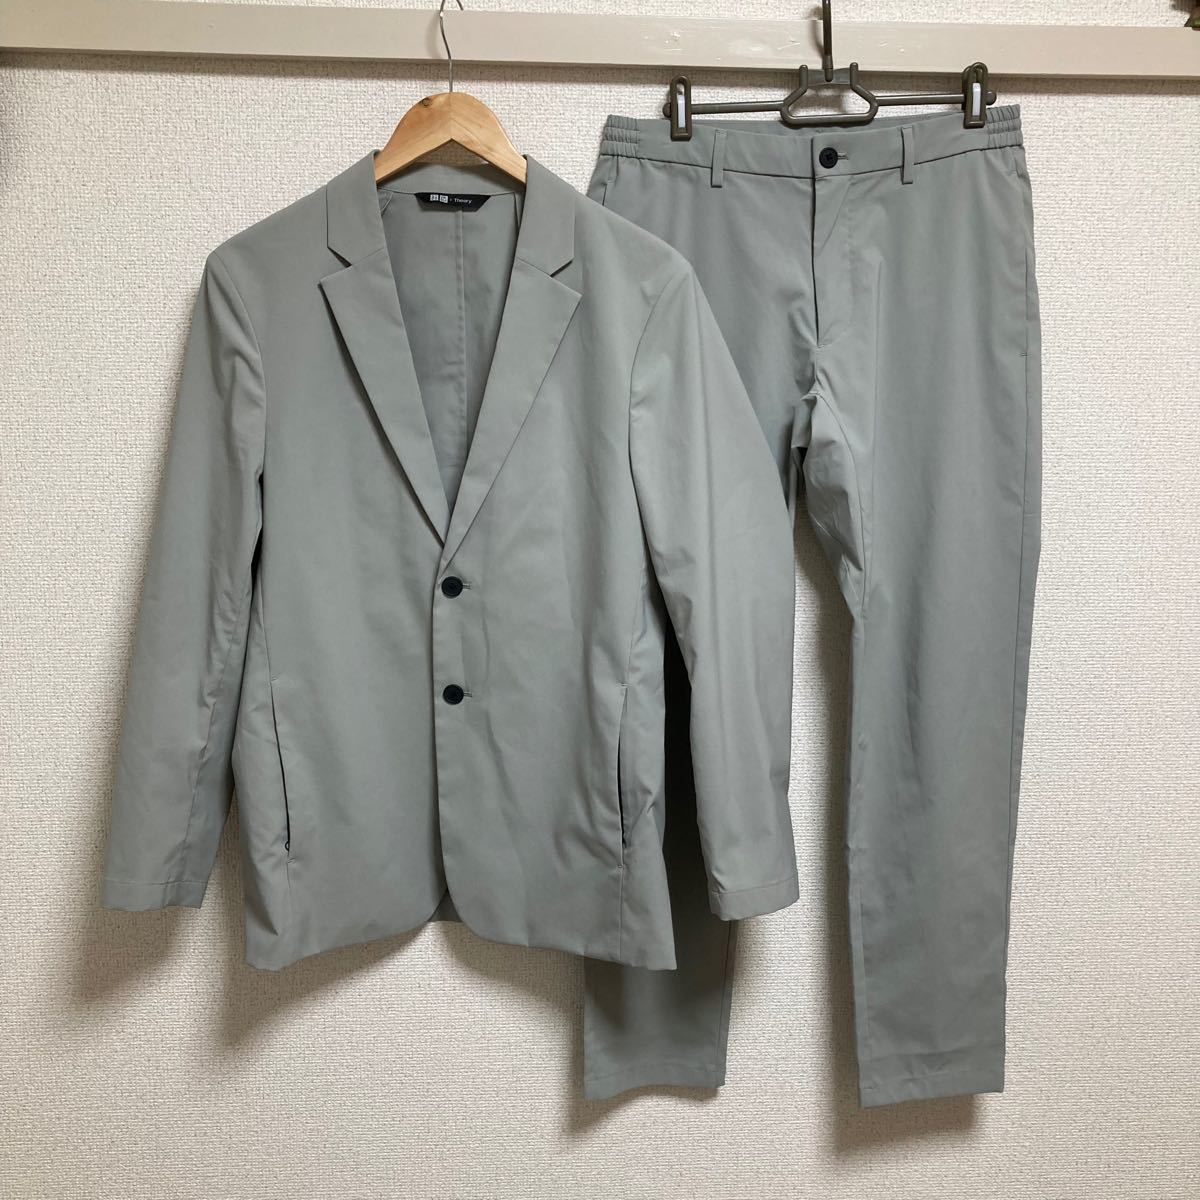 ユニクロ × セオリー セットアップ スーツ テーラードジャケット 